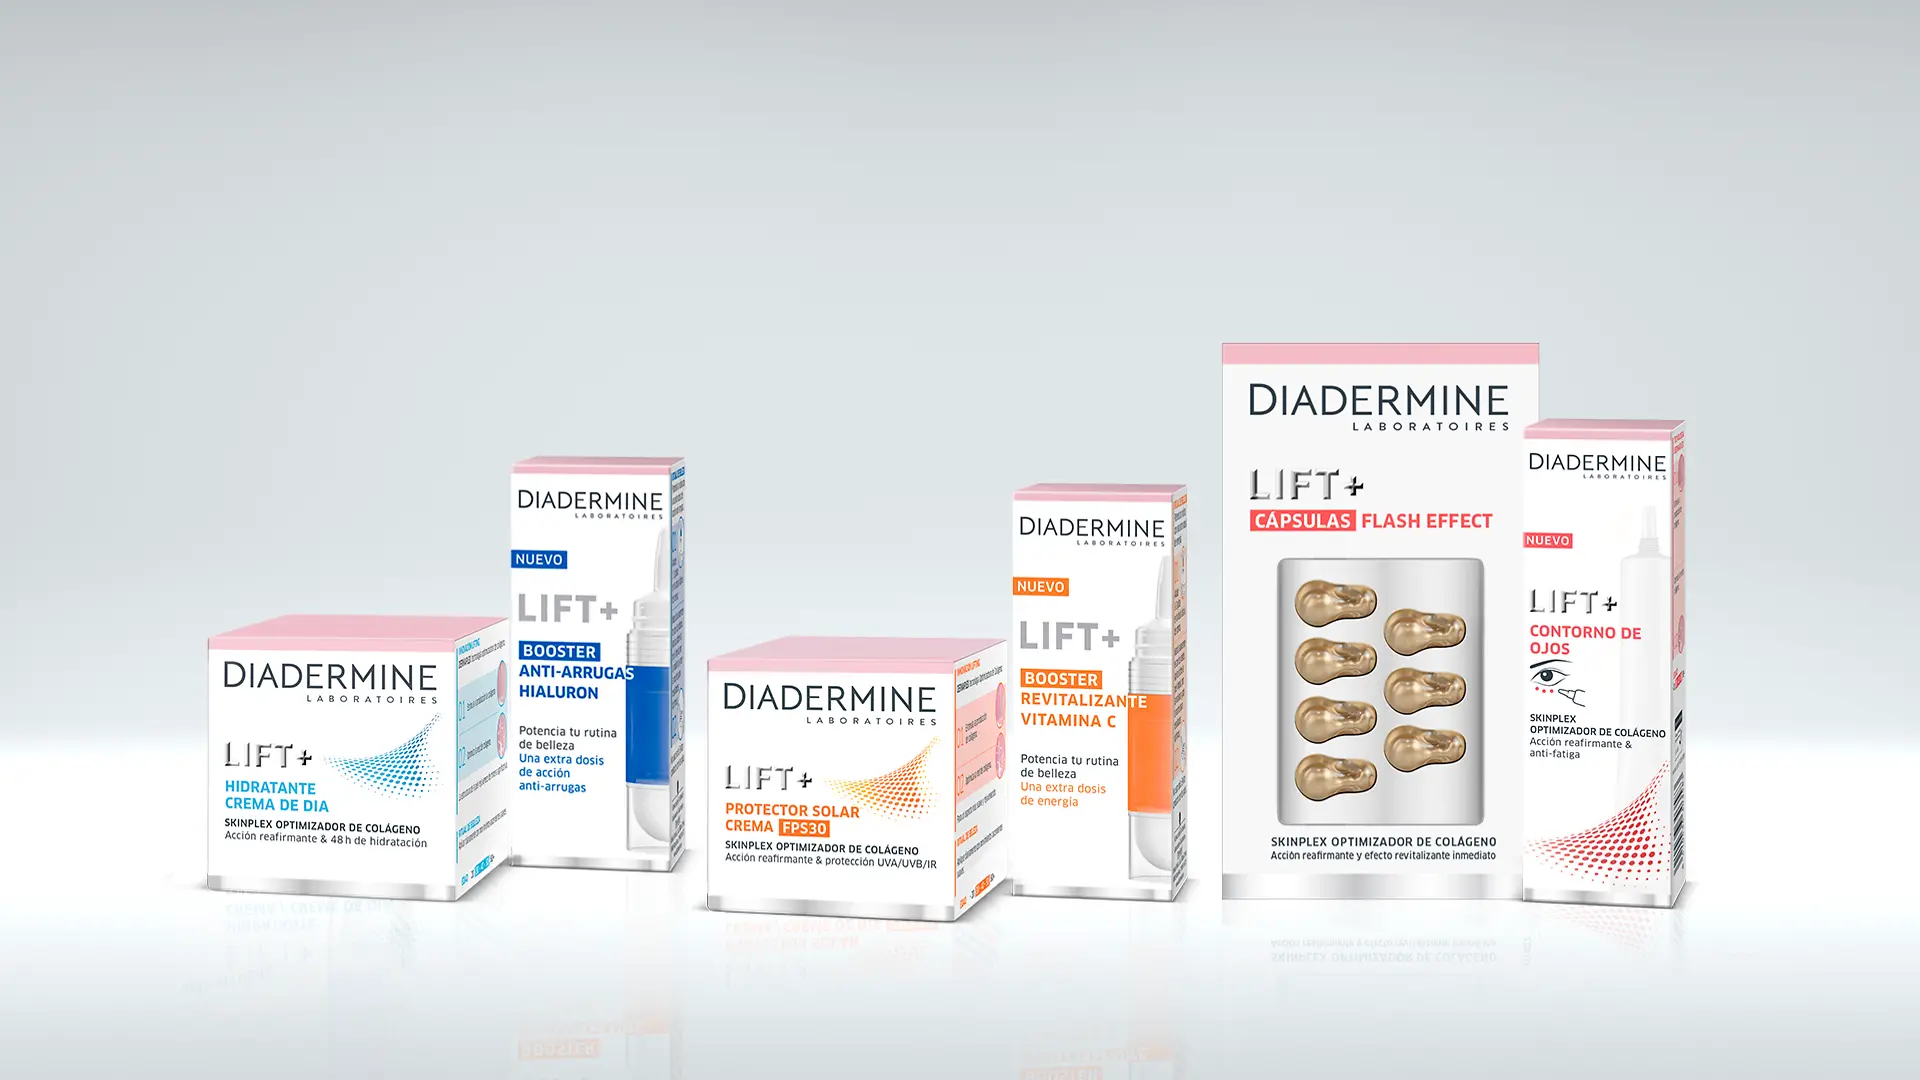 Diadermine renueva su gama Lift+ e incorpora los boosters al mercado de gran consumo